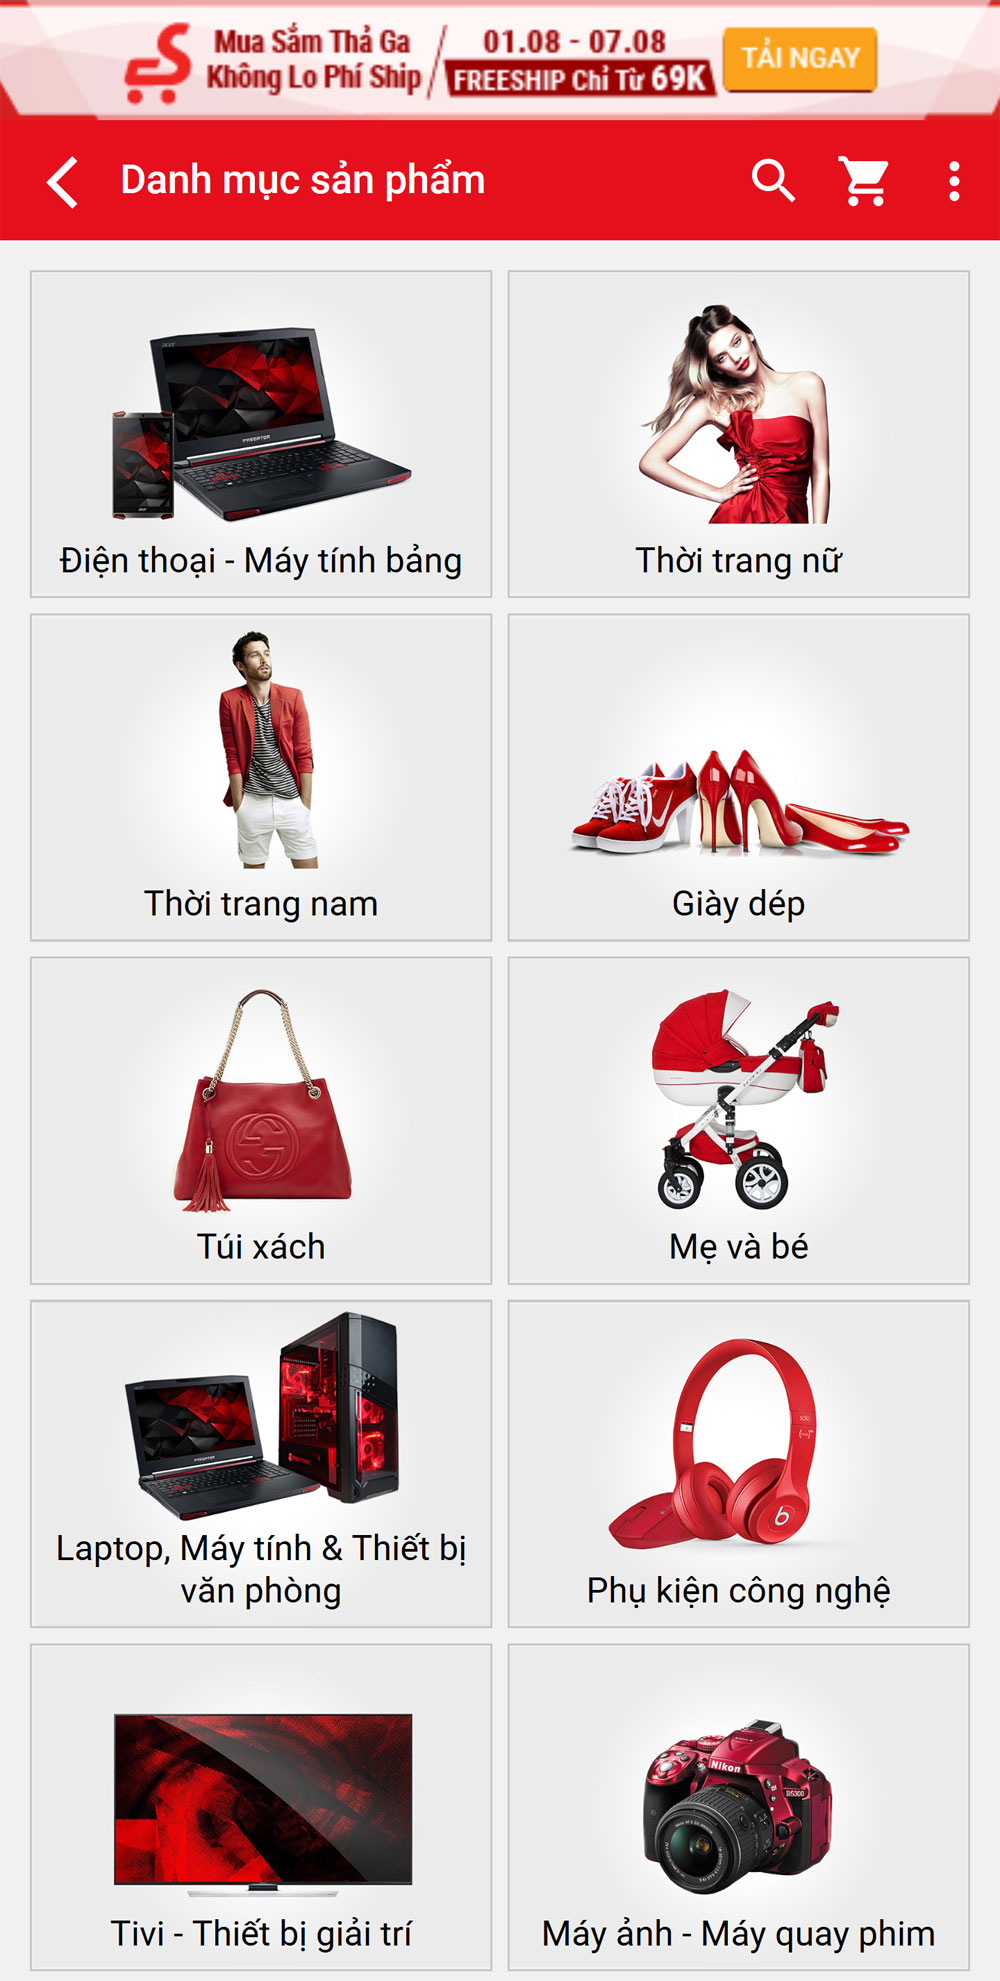 Danh mục sản phẩm mobile của website thương mại điện tử Sendo.vn